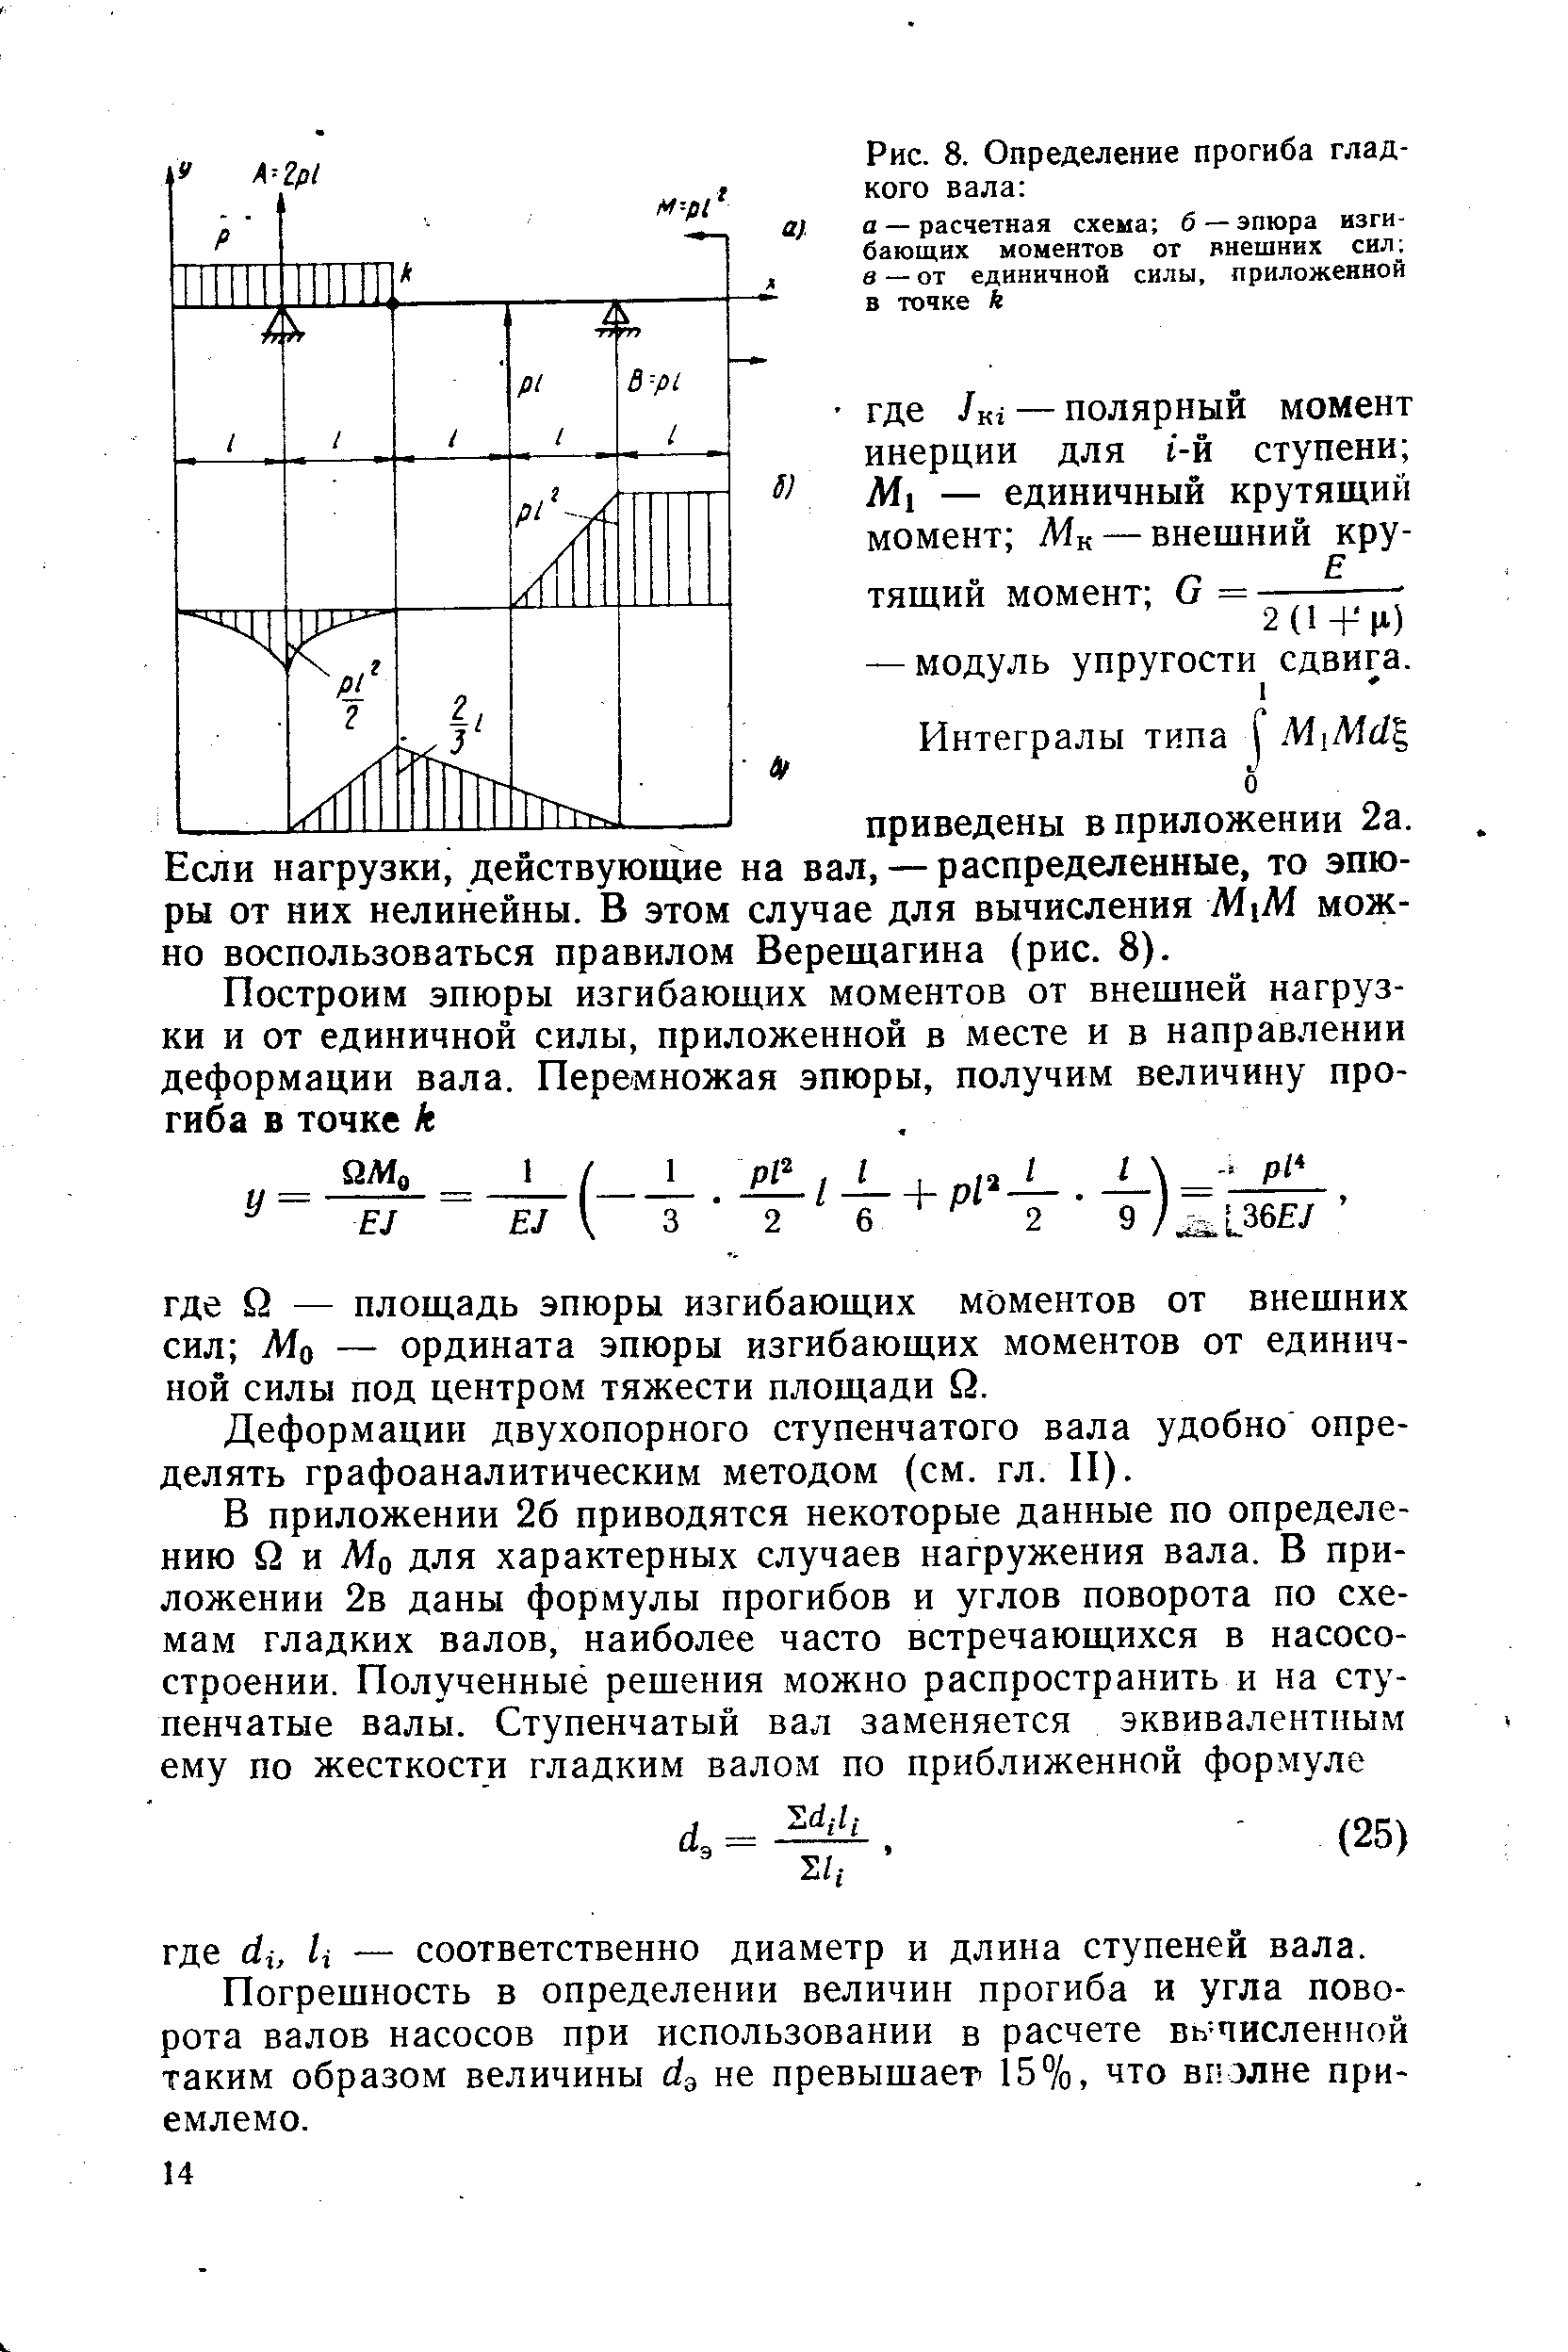 Деформации двухопорного ступенчатого вала удобно определять графоаналитическим методом (см. гл. И).